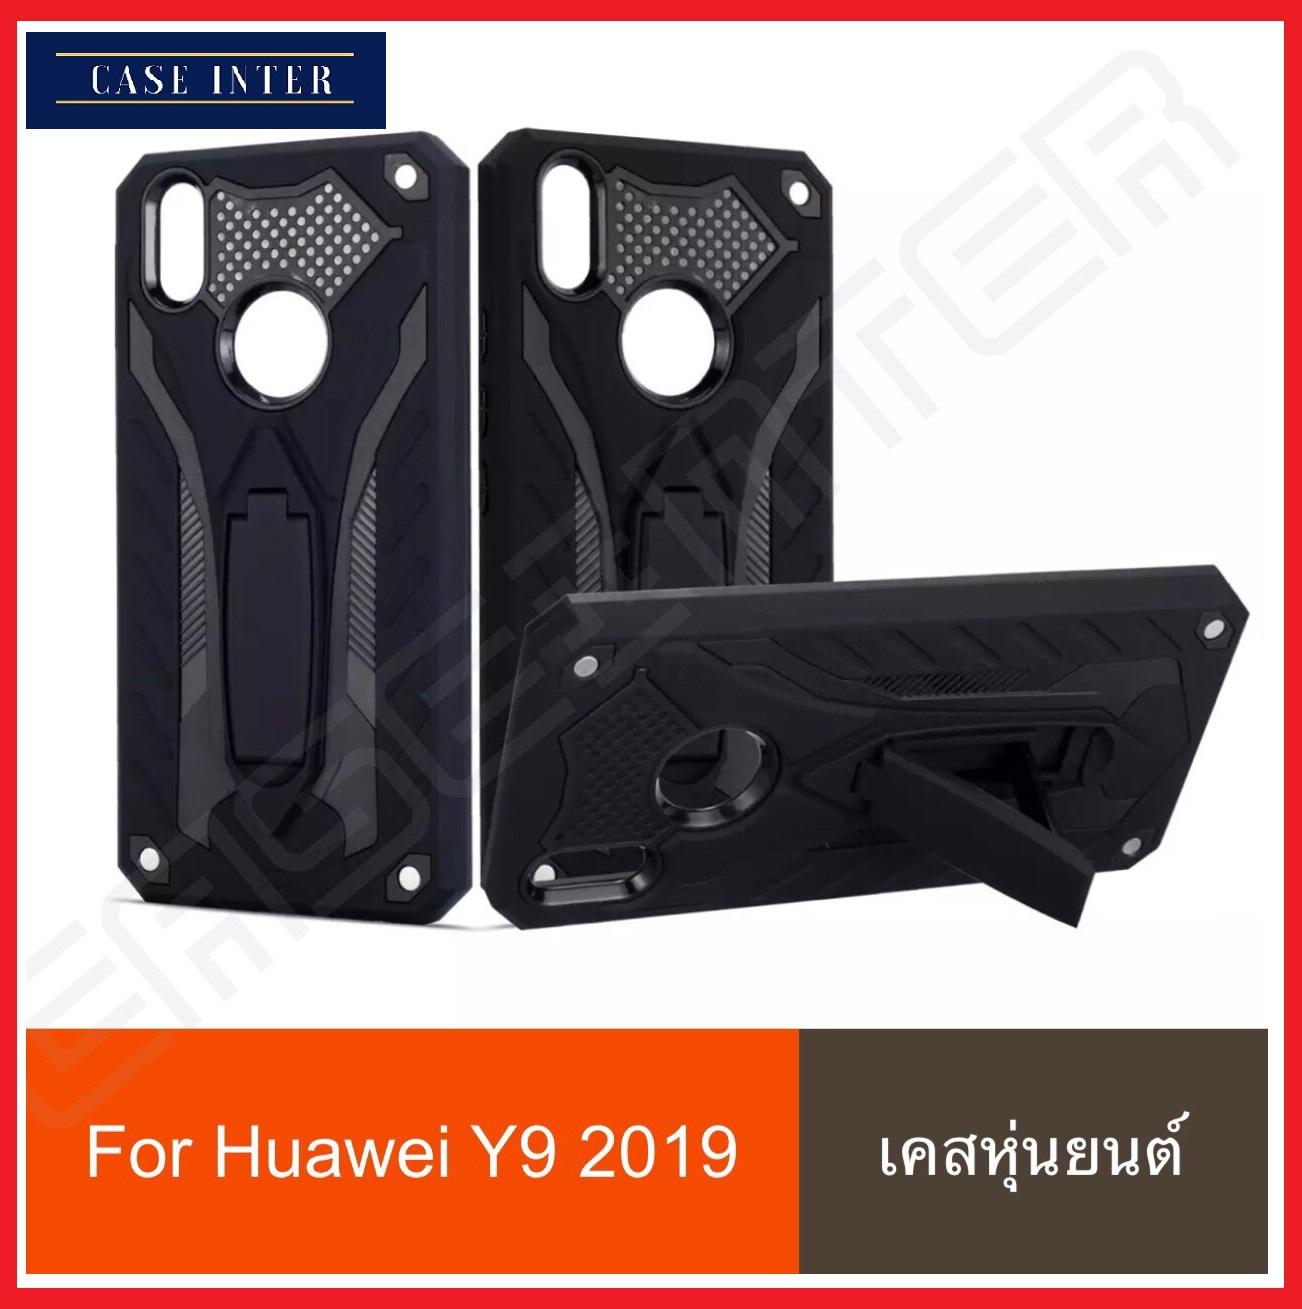 พร้อมส่งทันที !! Case Huawei Y9 2019 Huawei Y9 2019 เคสหัวเว่ย วาย 9 2019 เคสหุ่นยนต์ เคสไฮบริด มีขาตั้ง y92019 เคสกันกระแทก TPU CASE Case Huawei Y9 2019 สินค้าใหม่ สินค้ารับประกันความพอใจ